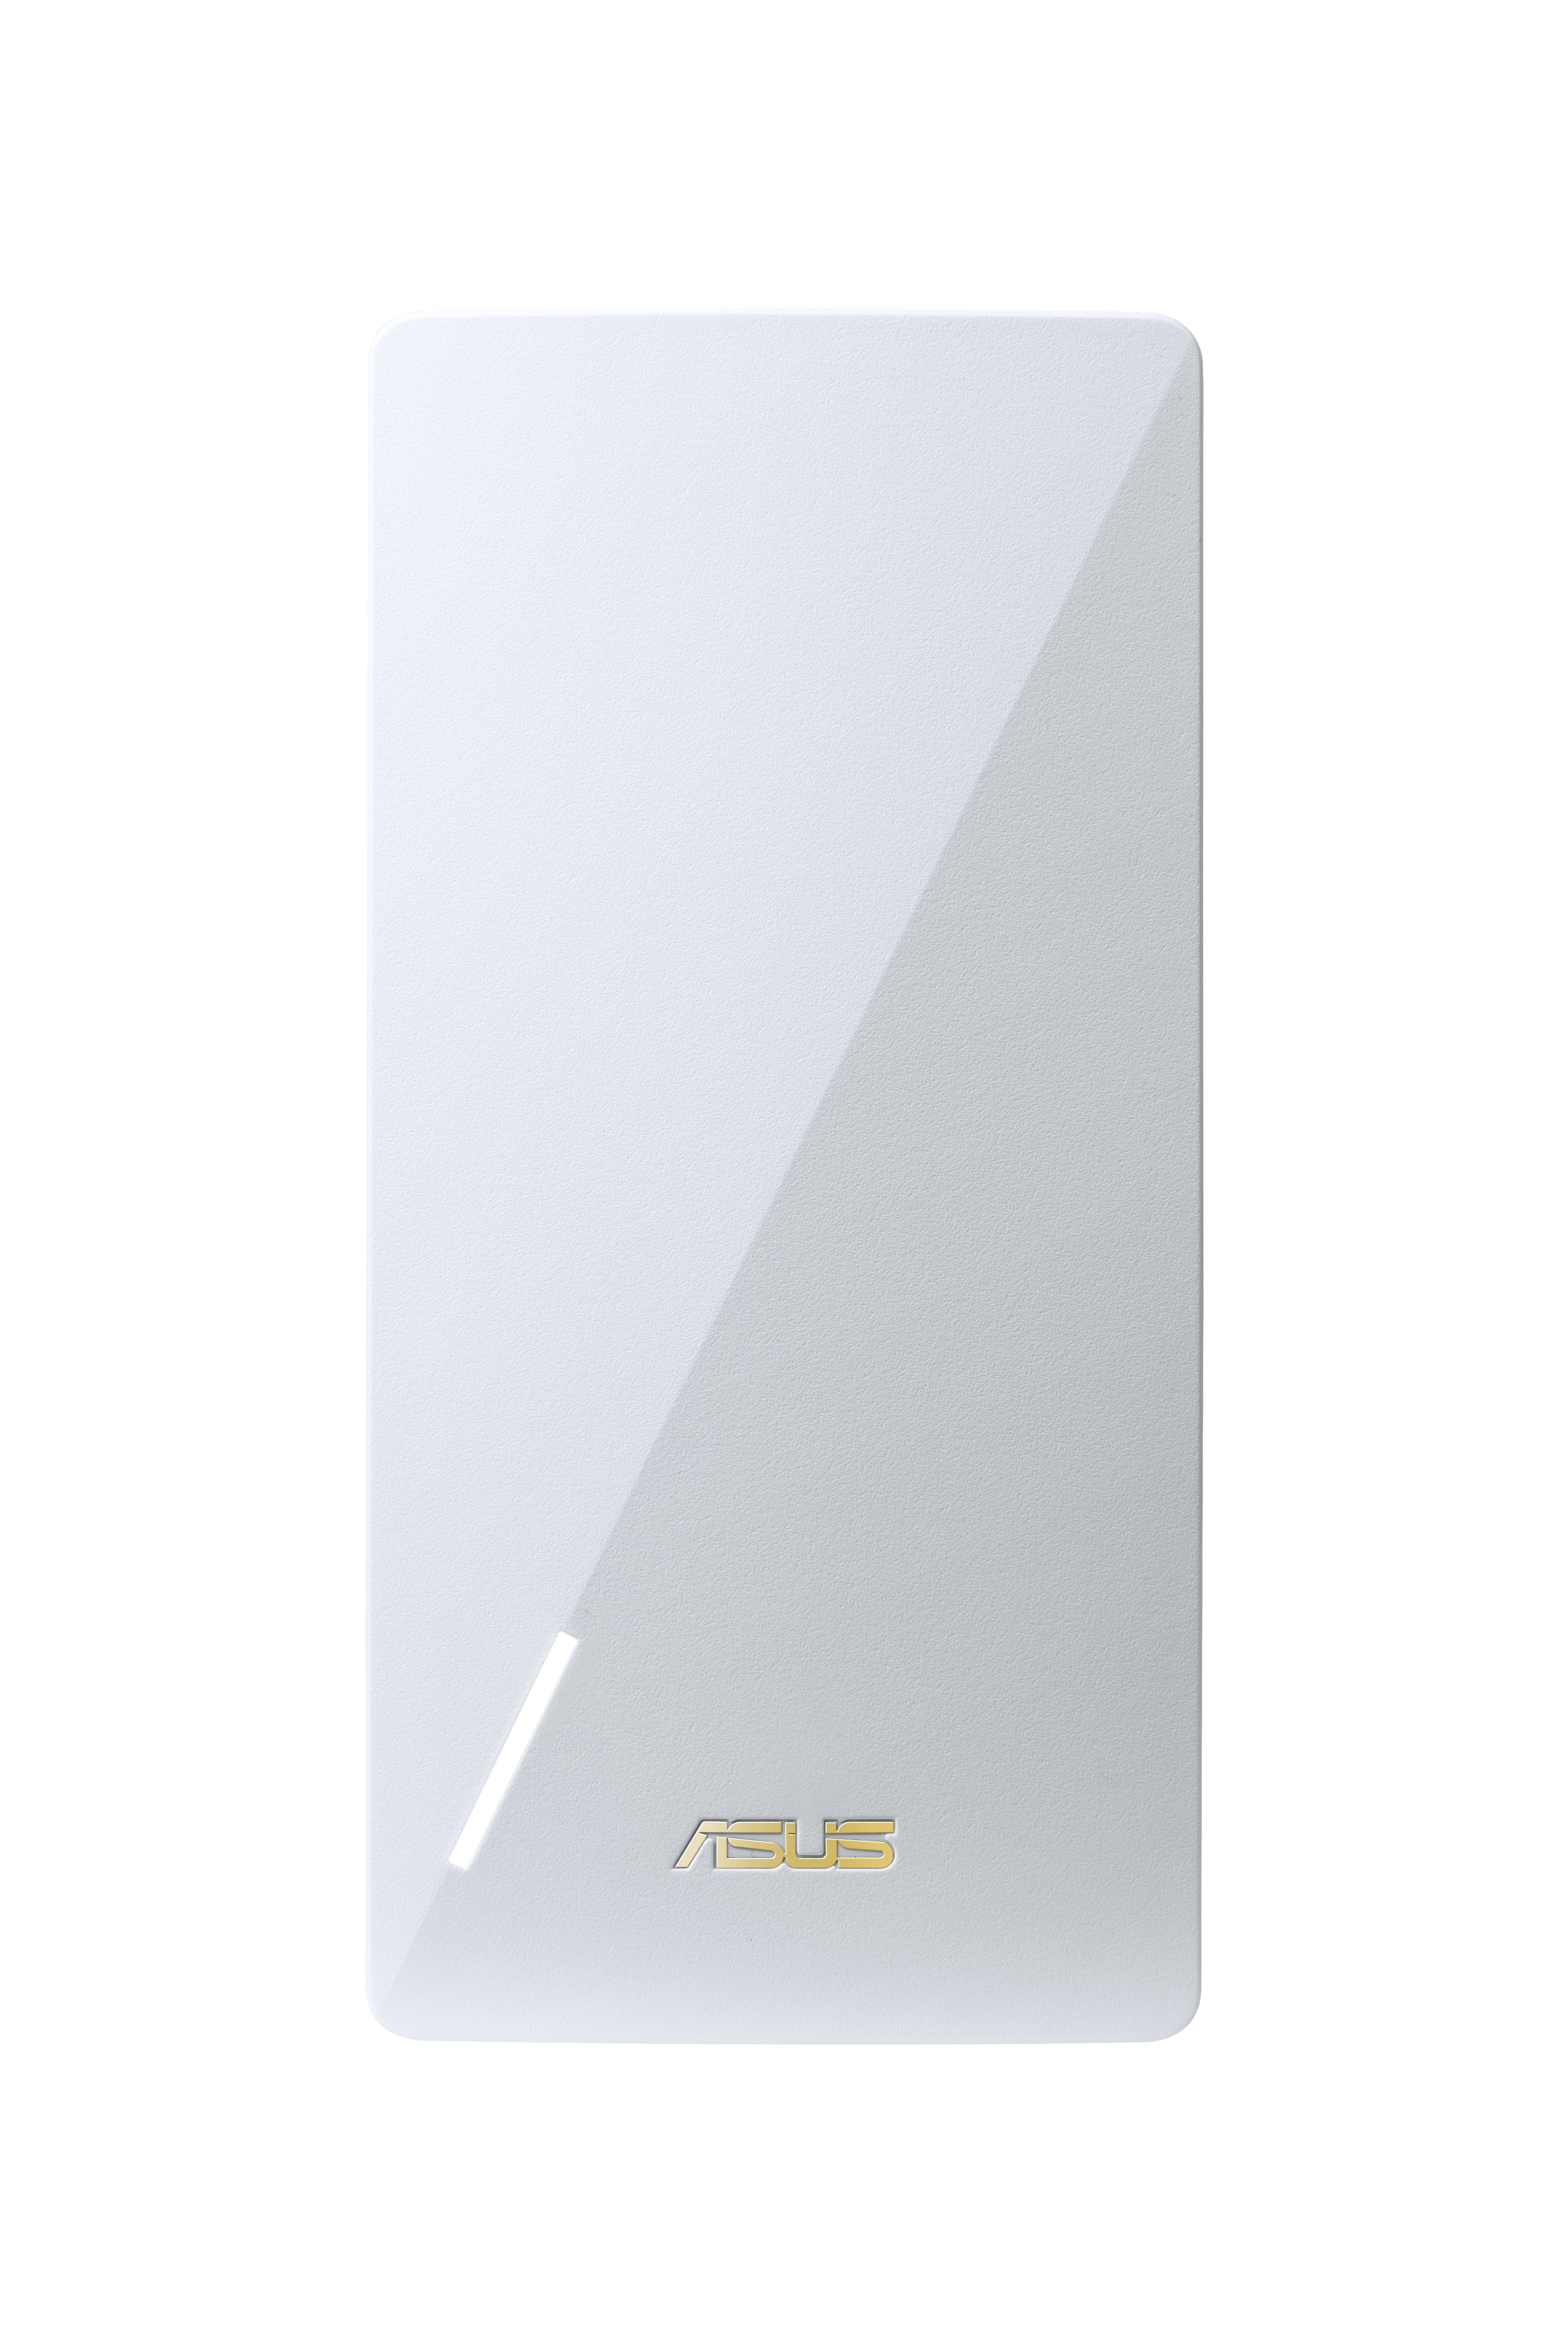 ASUS RP-AX58 Netværkssender Hvid 10, 100, 1000 Mbit/s